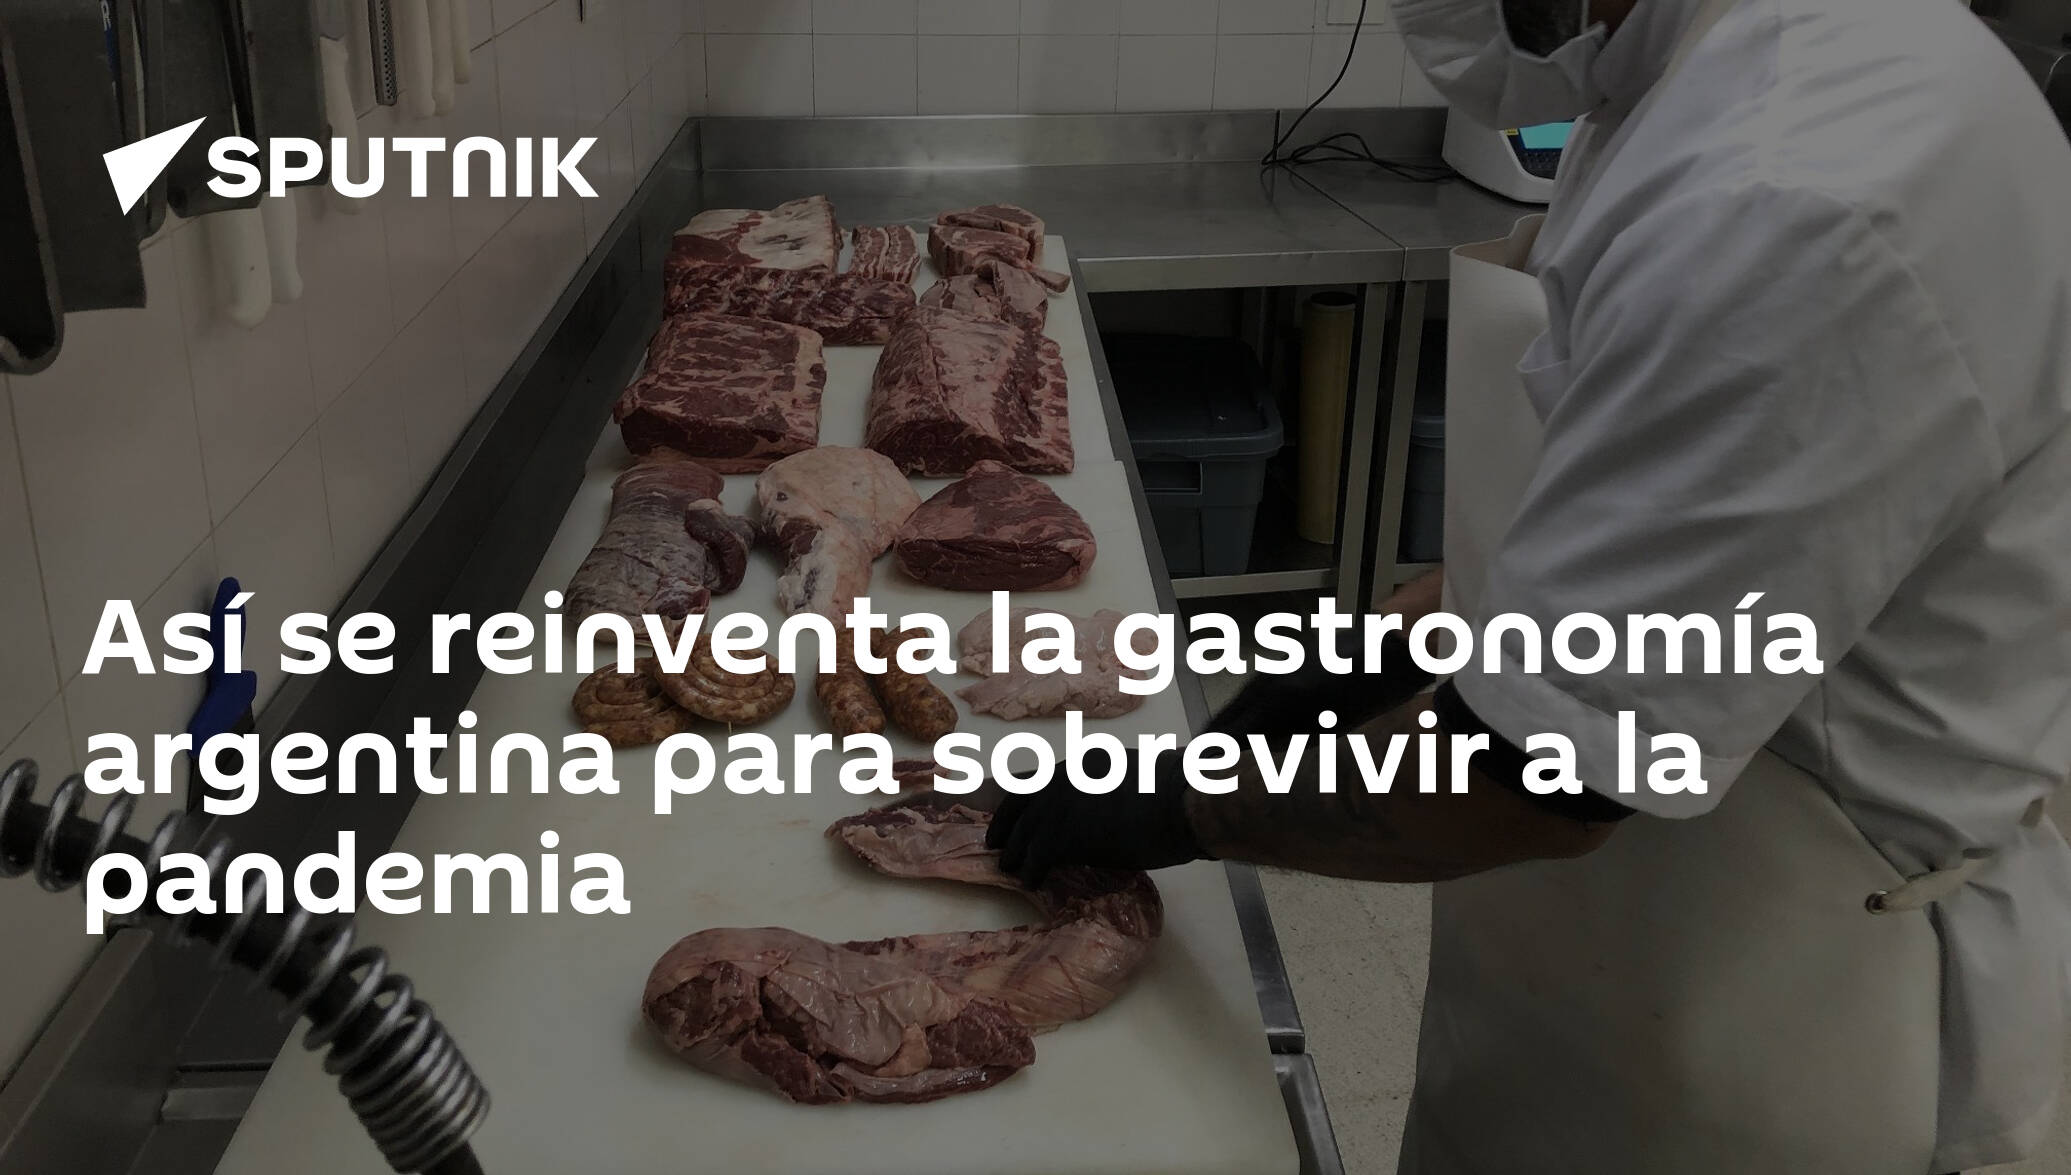 La parrilla argentina se reinventa en tiempos de coronavirus